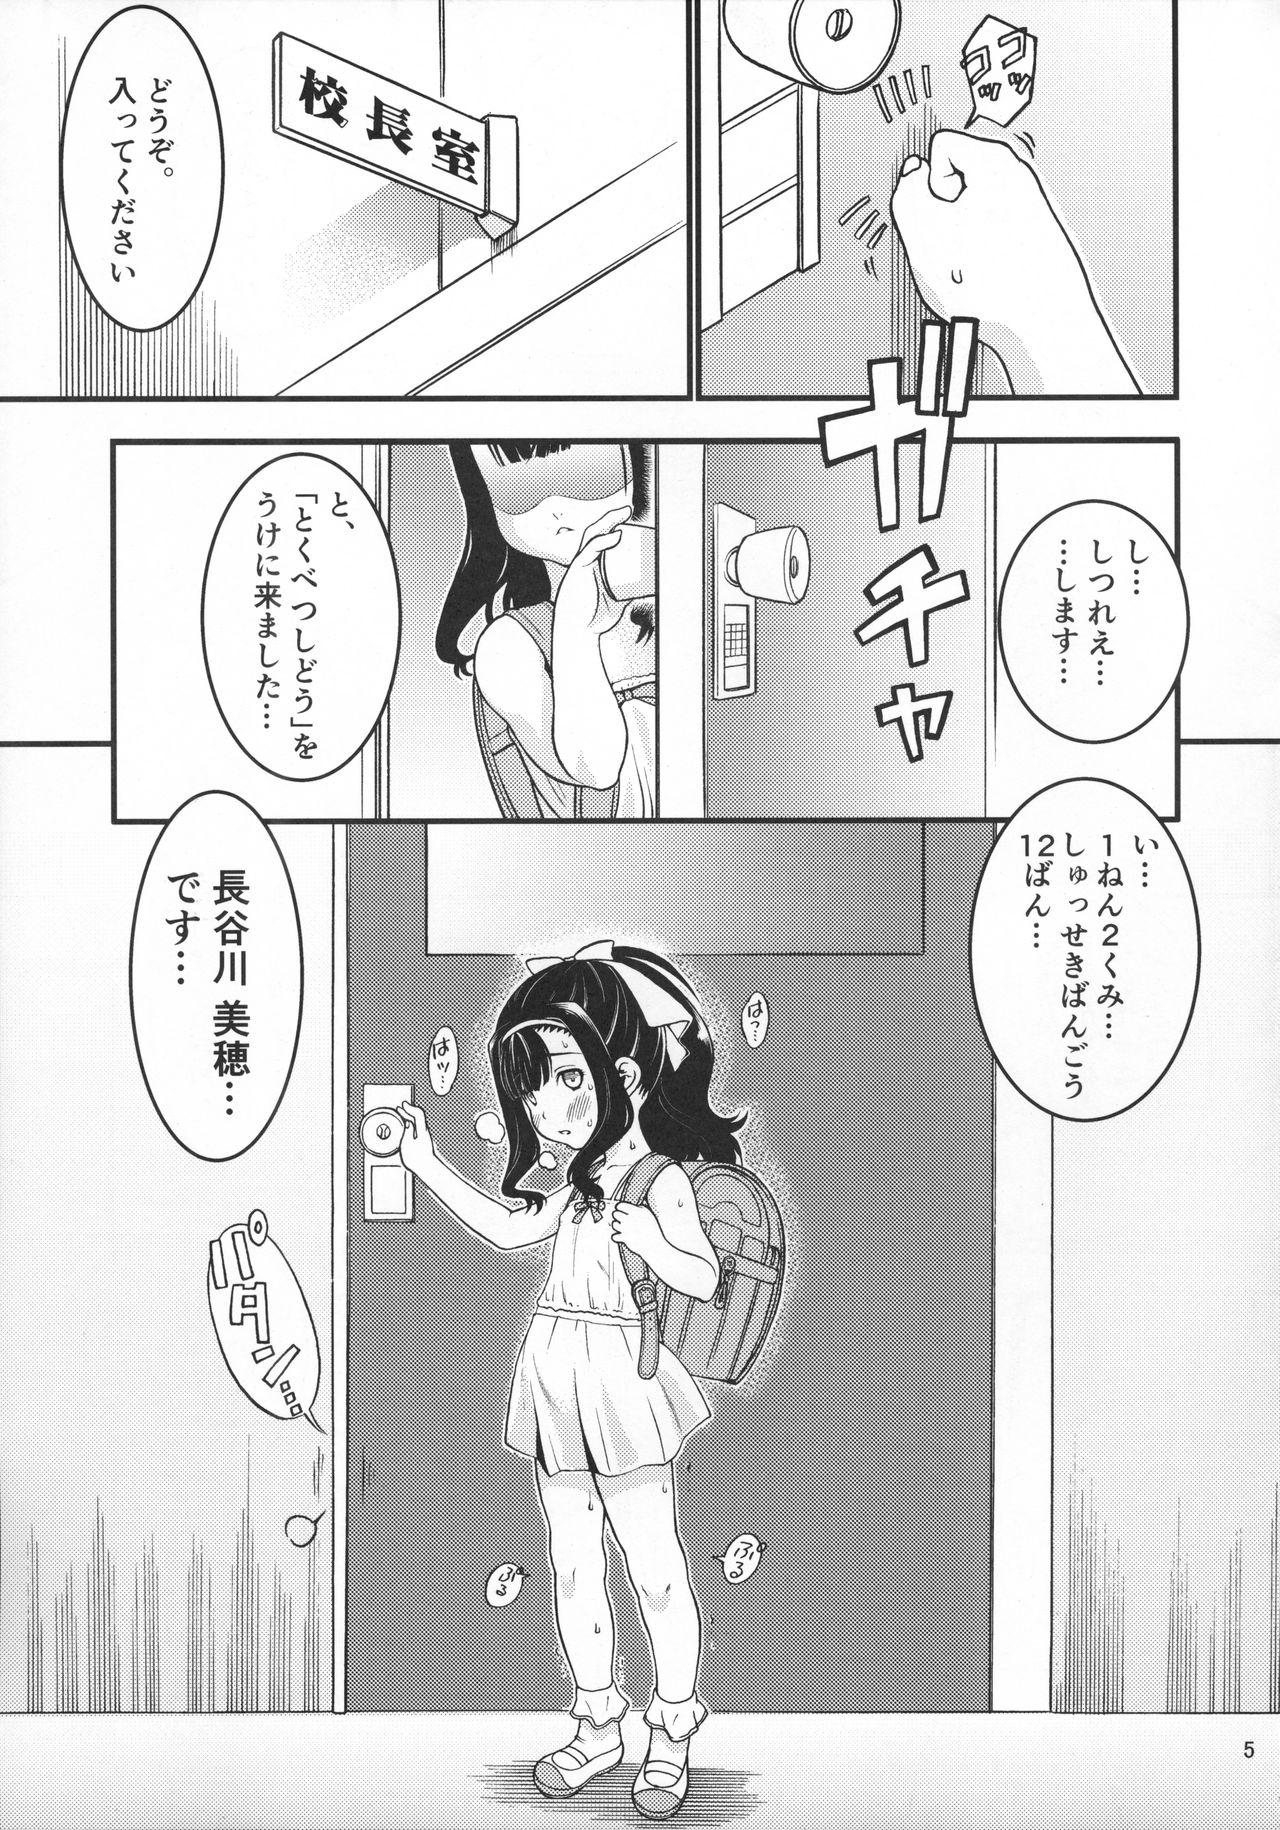 Vaginal Heisei 29-nendo Tokushu Ginou Yuushuu Seito Shidou Youkou Large - Page 7